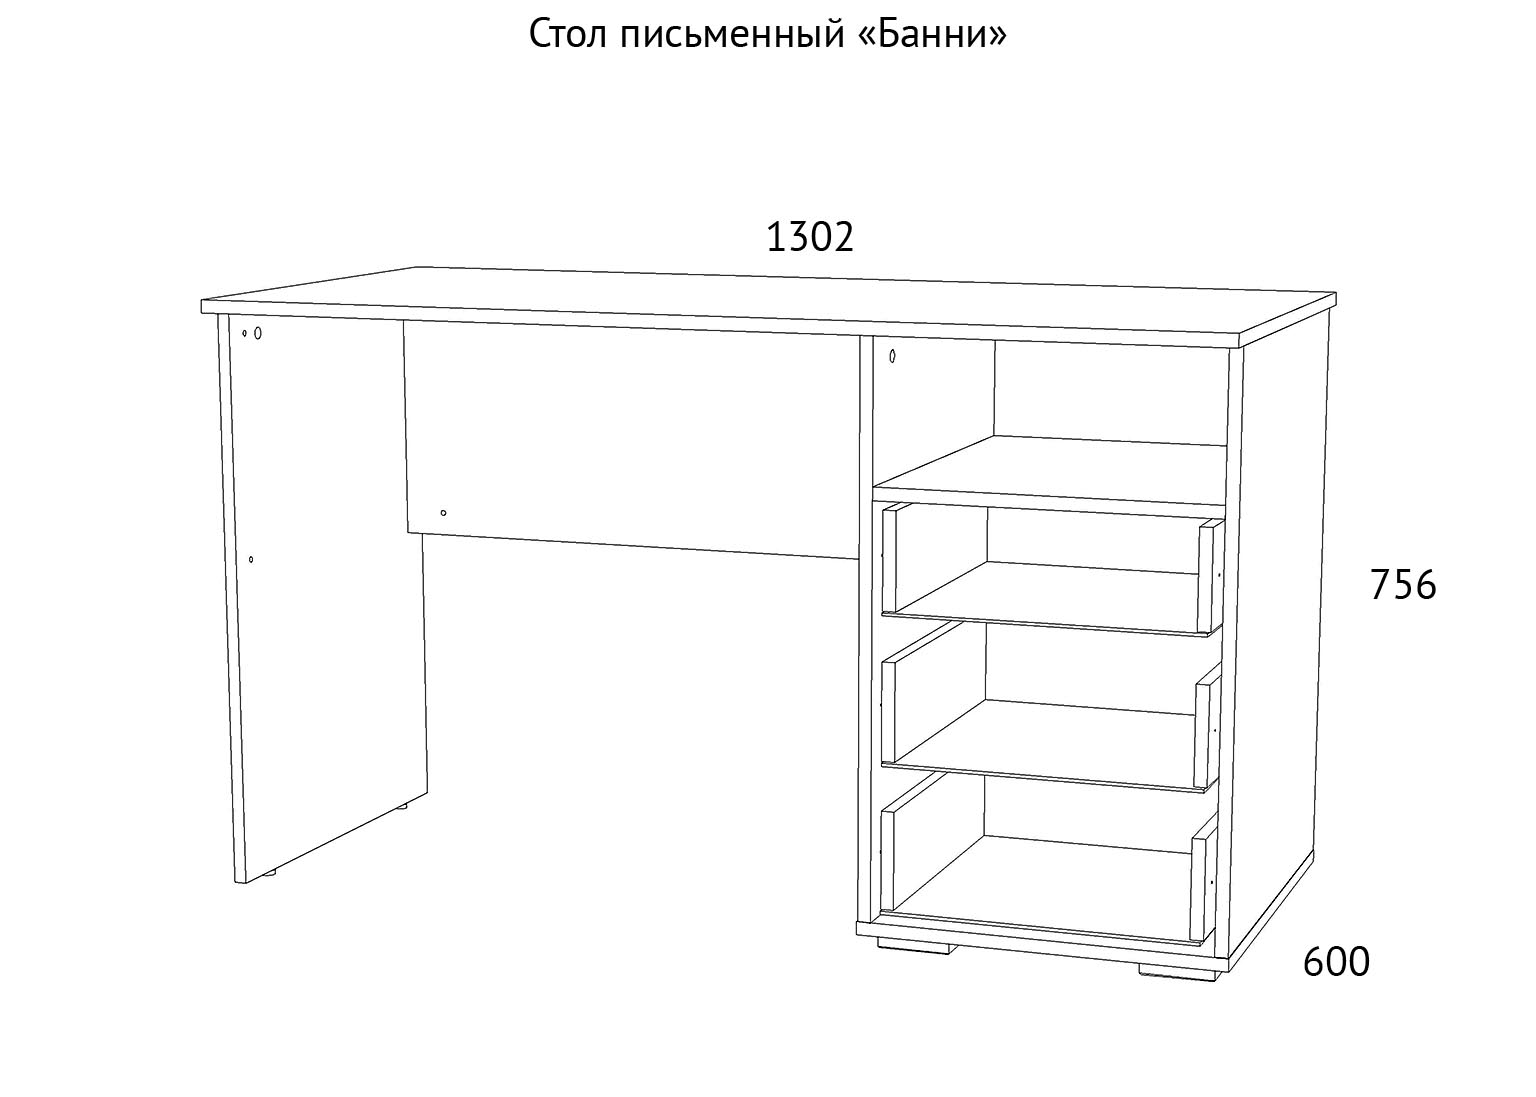 НМ 041.40 Стол письменный Банни схема Мебель Краснодар П